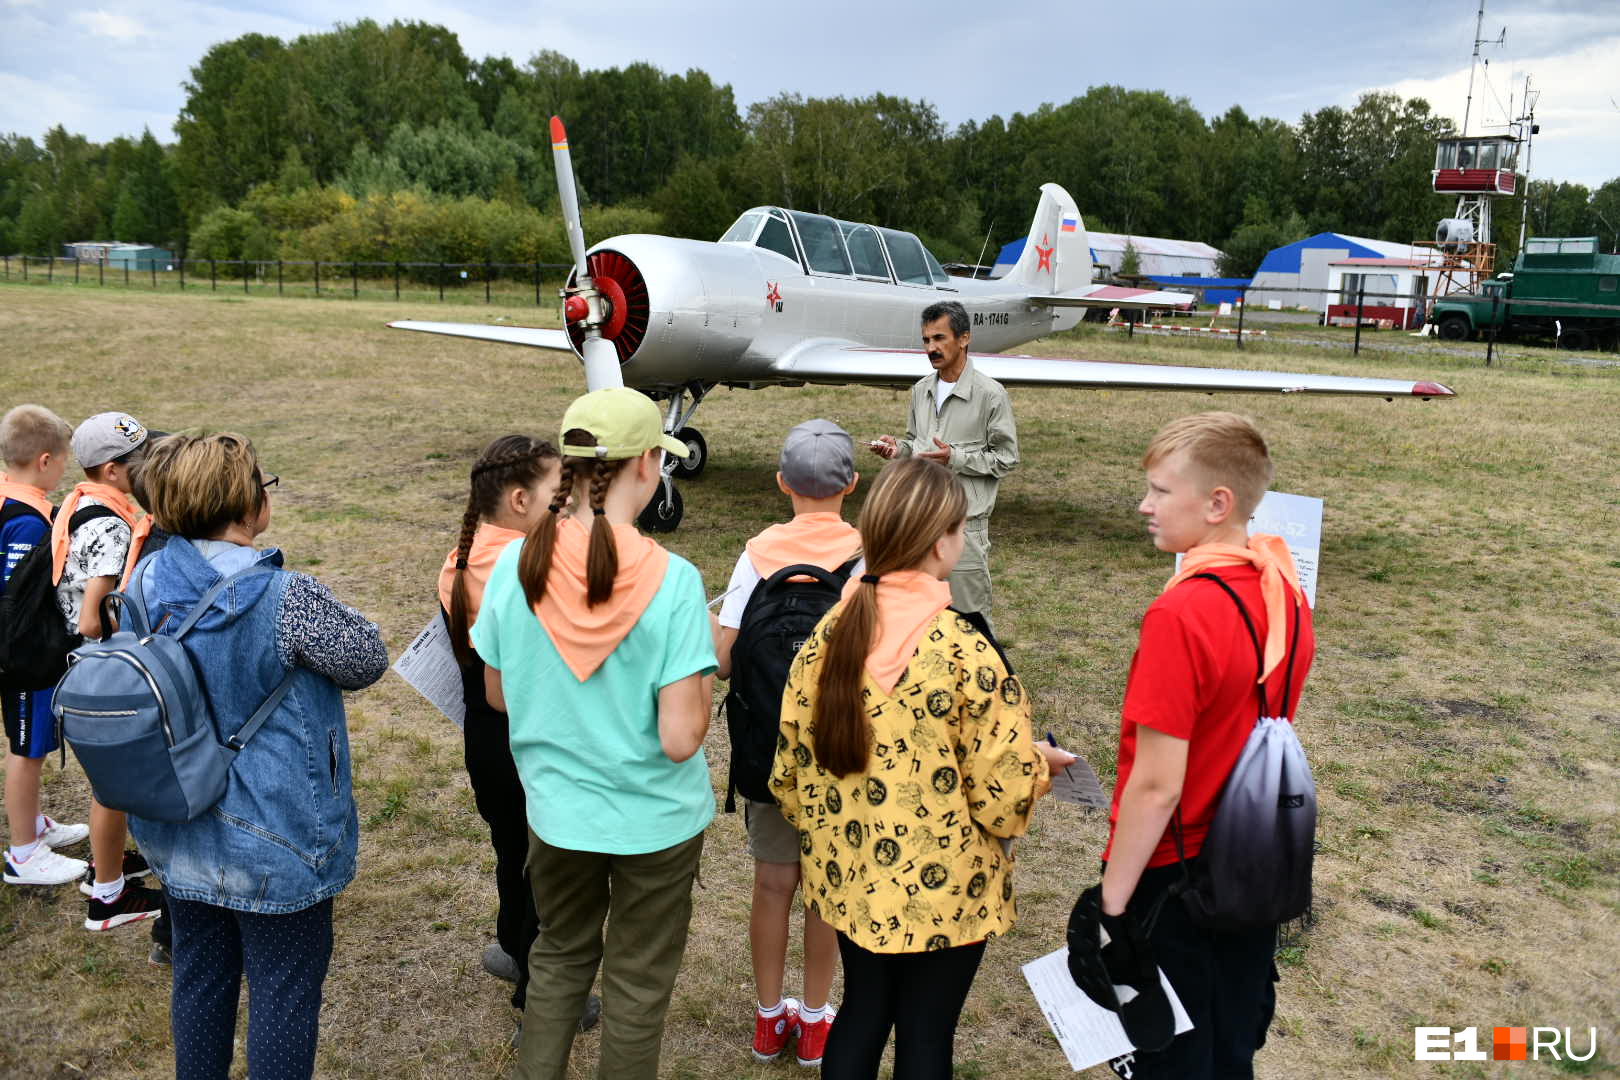 Летчик Хамит Гиниатуллин показал мастер-класс на легендарном учебно-тренировочном самолете Як-52 и рассказал, как проходят соревнования по высшему пилотажу